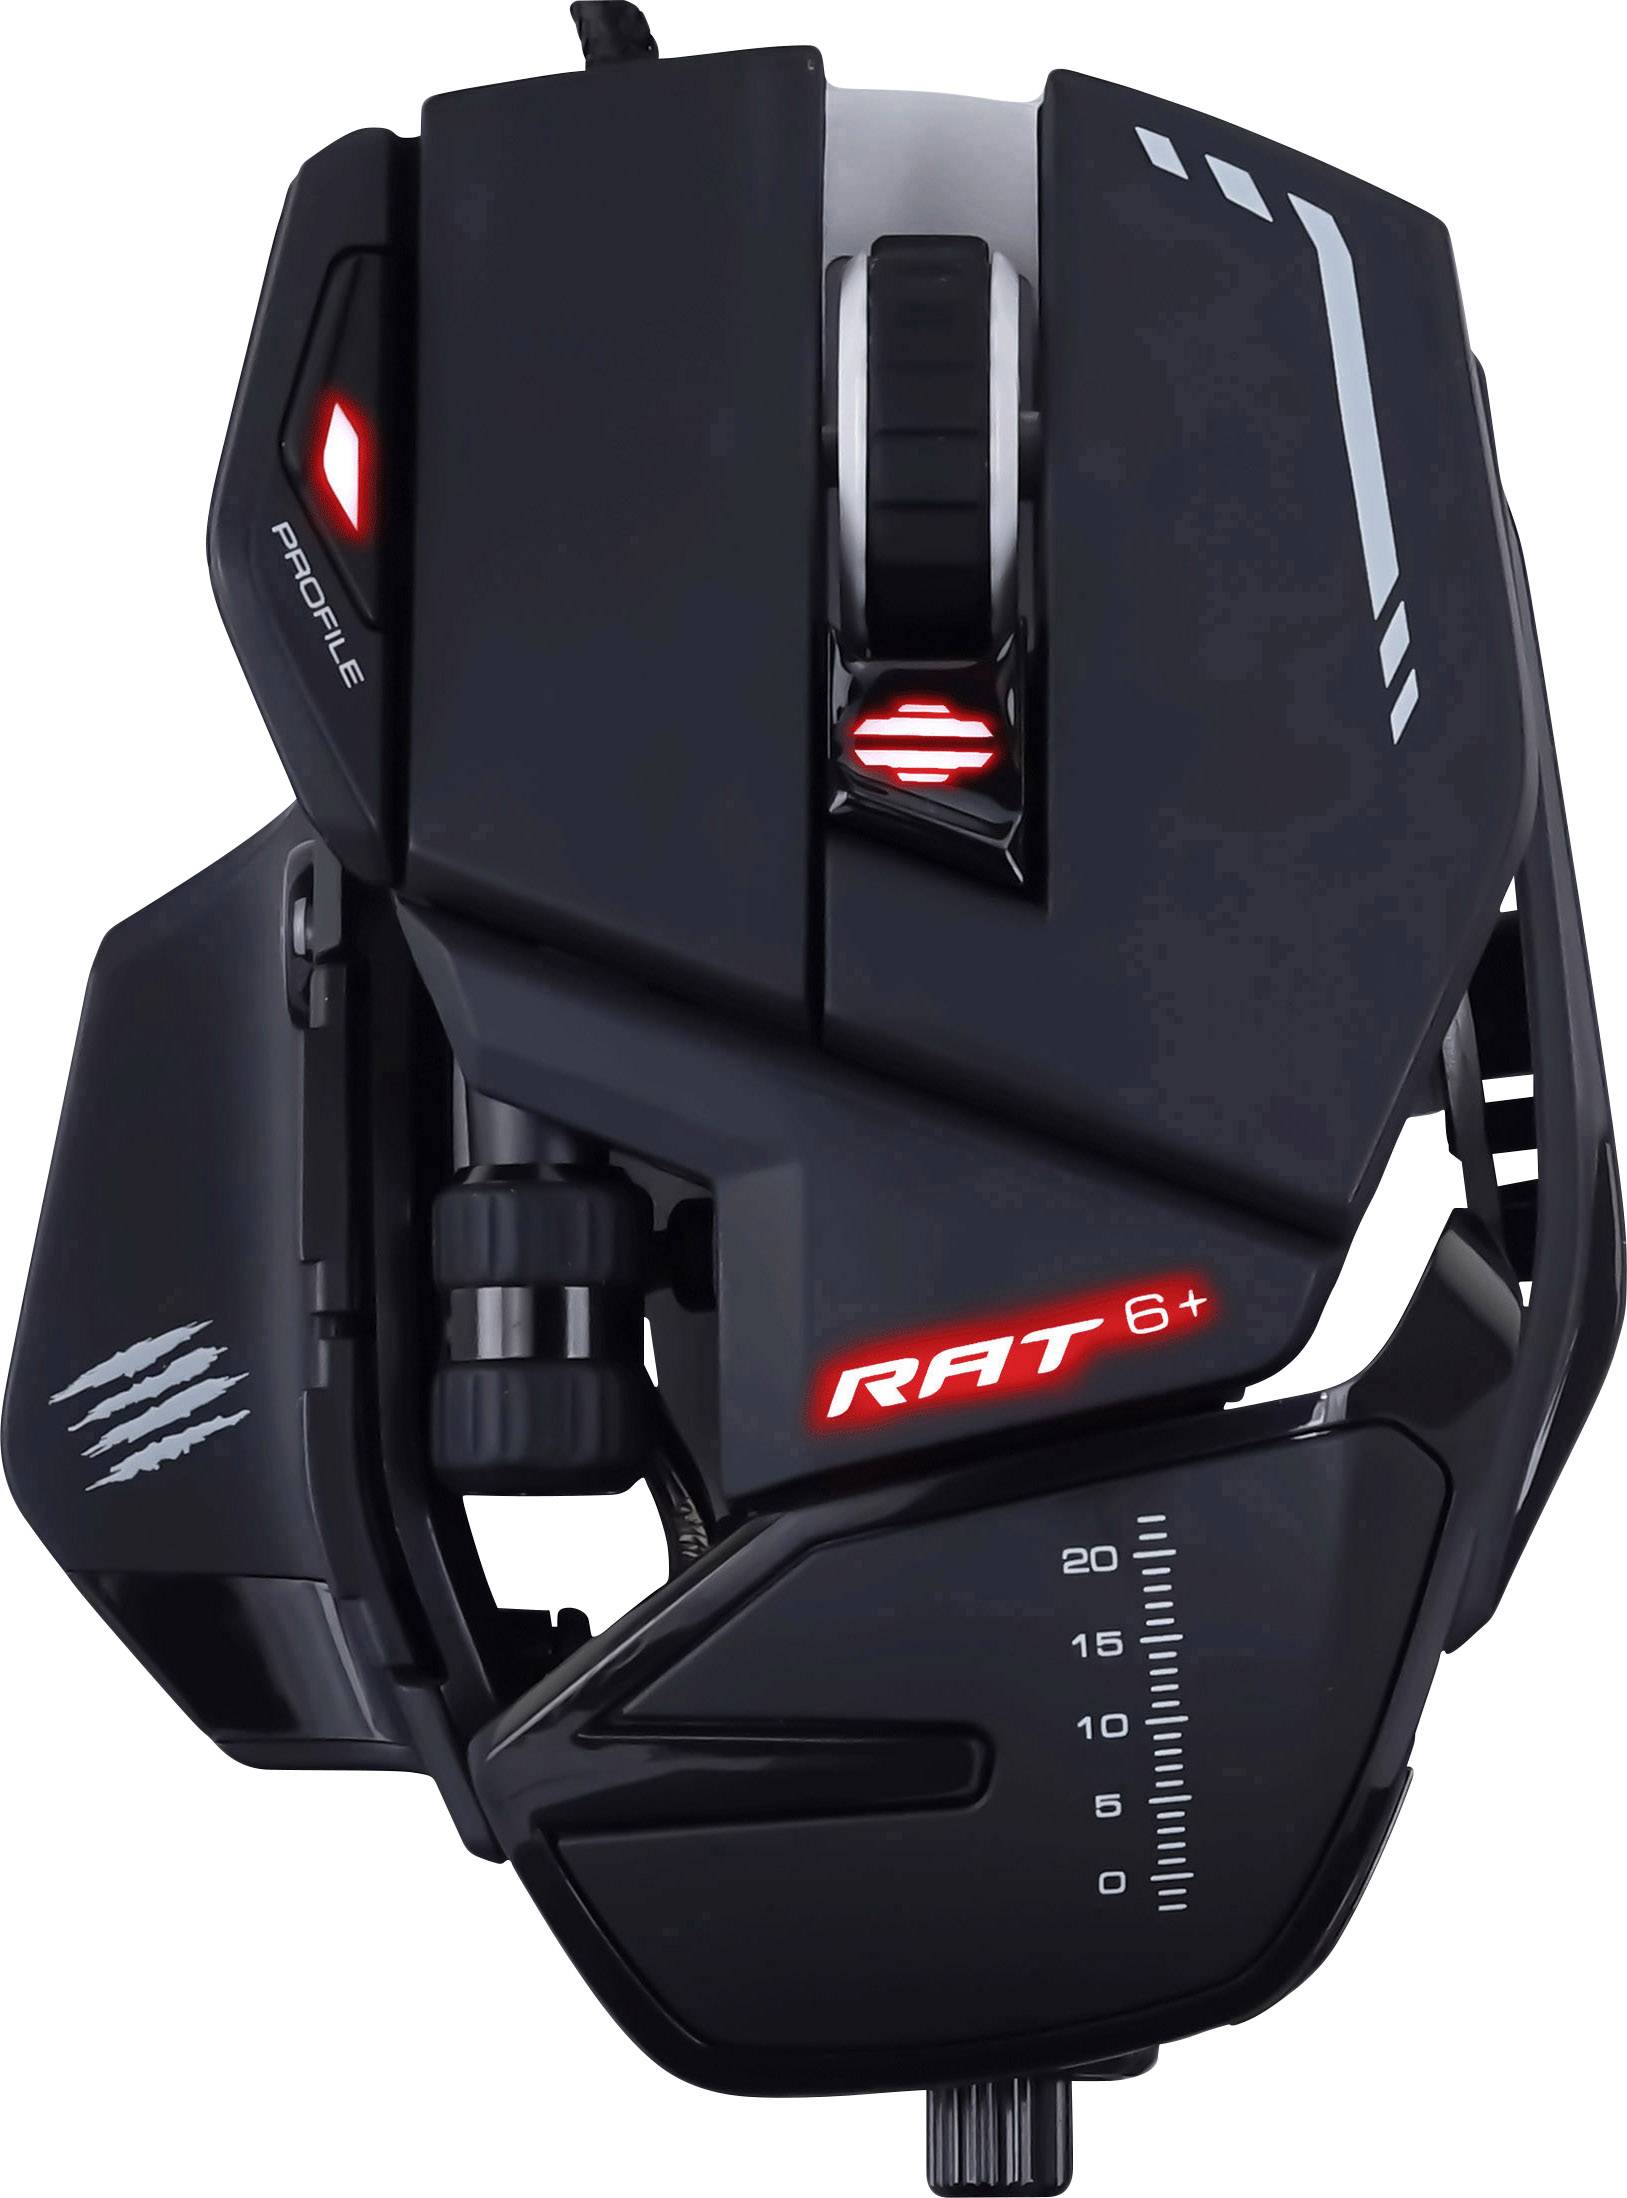 MAD CATZ R.A.T. 6+ Gaming Maus Schwarz - Maus - Optisch (MR04DCINBL000-0)